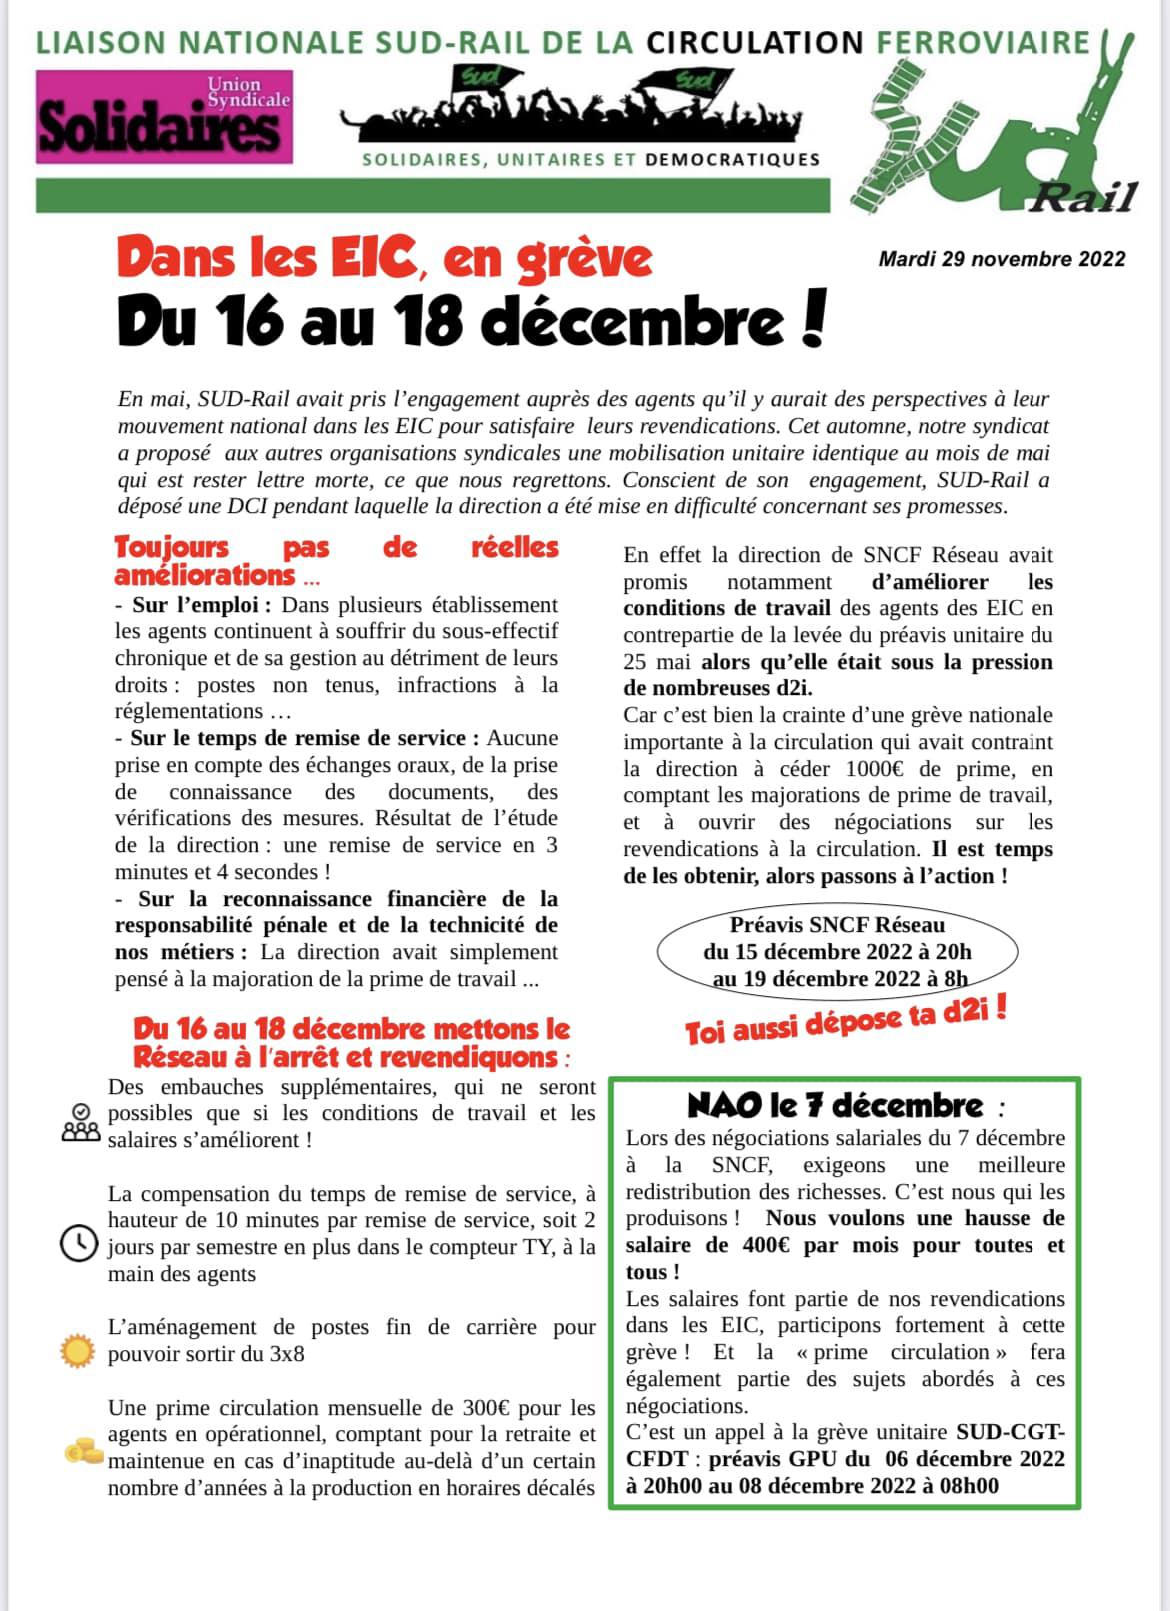 Dans les EIC, en grève du 16 au 18 décembre !